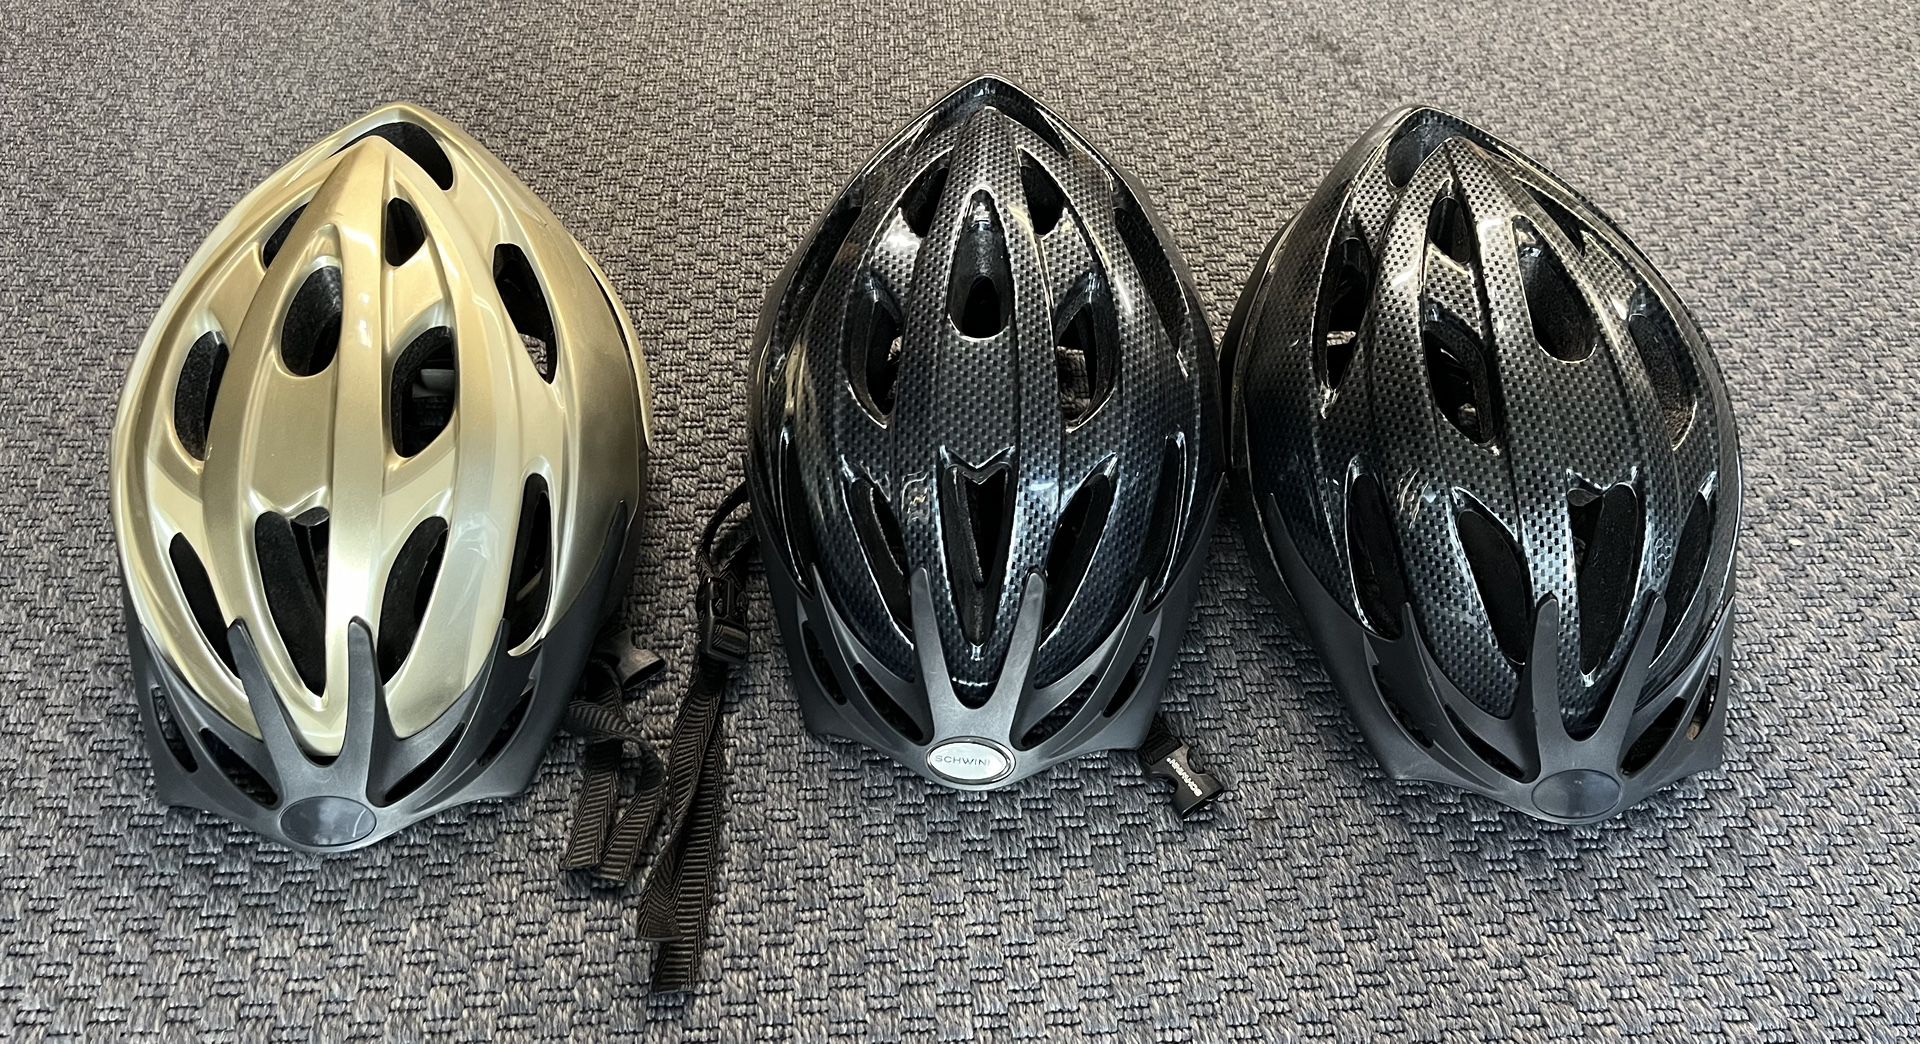 Bicycle Helmets 